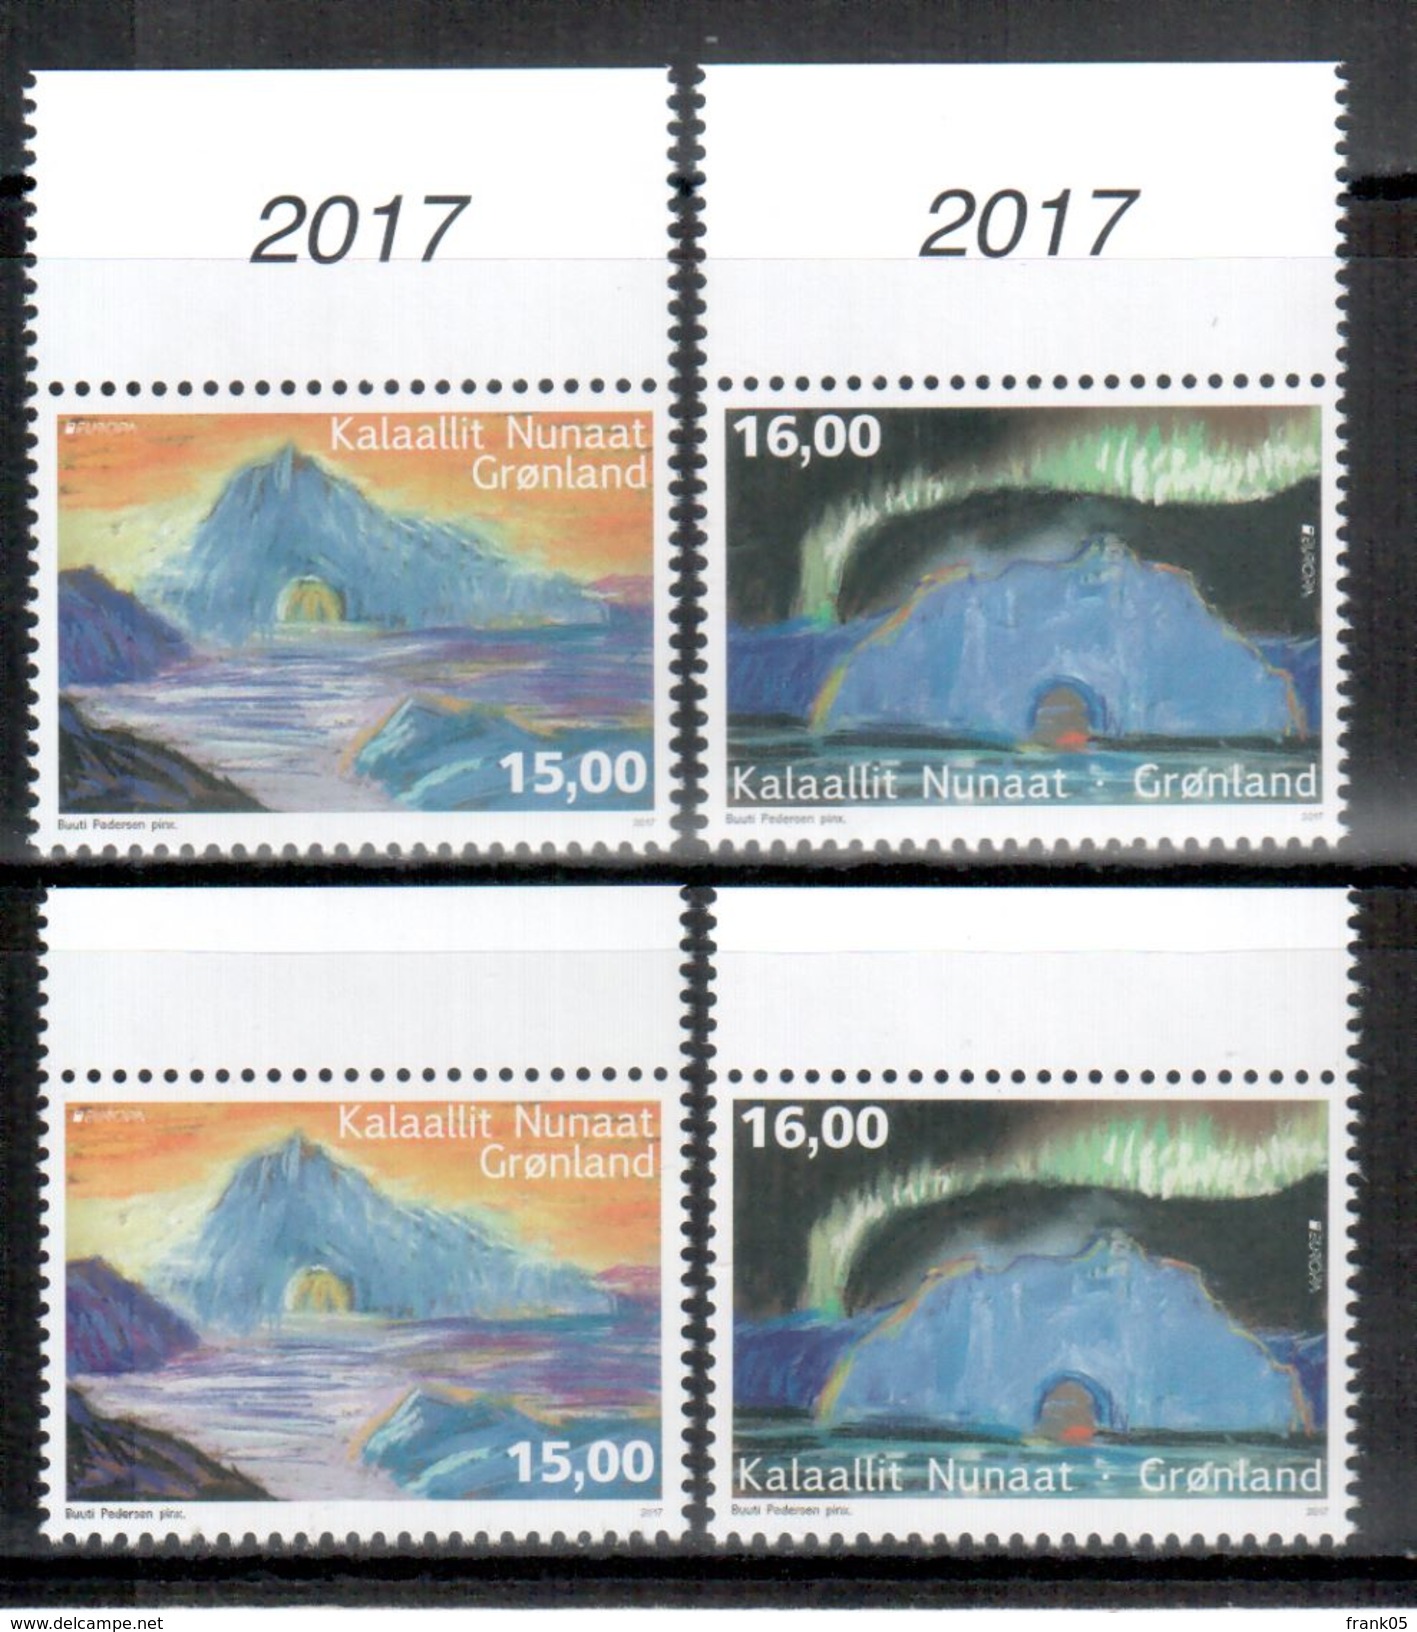 Grönland / Greenland / Groenland 2017 Satz Aus Bogen Und Kleinbogen/set EUROPA ** - 2017